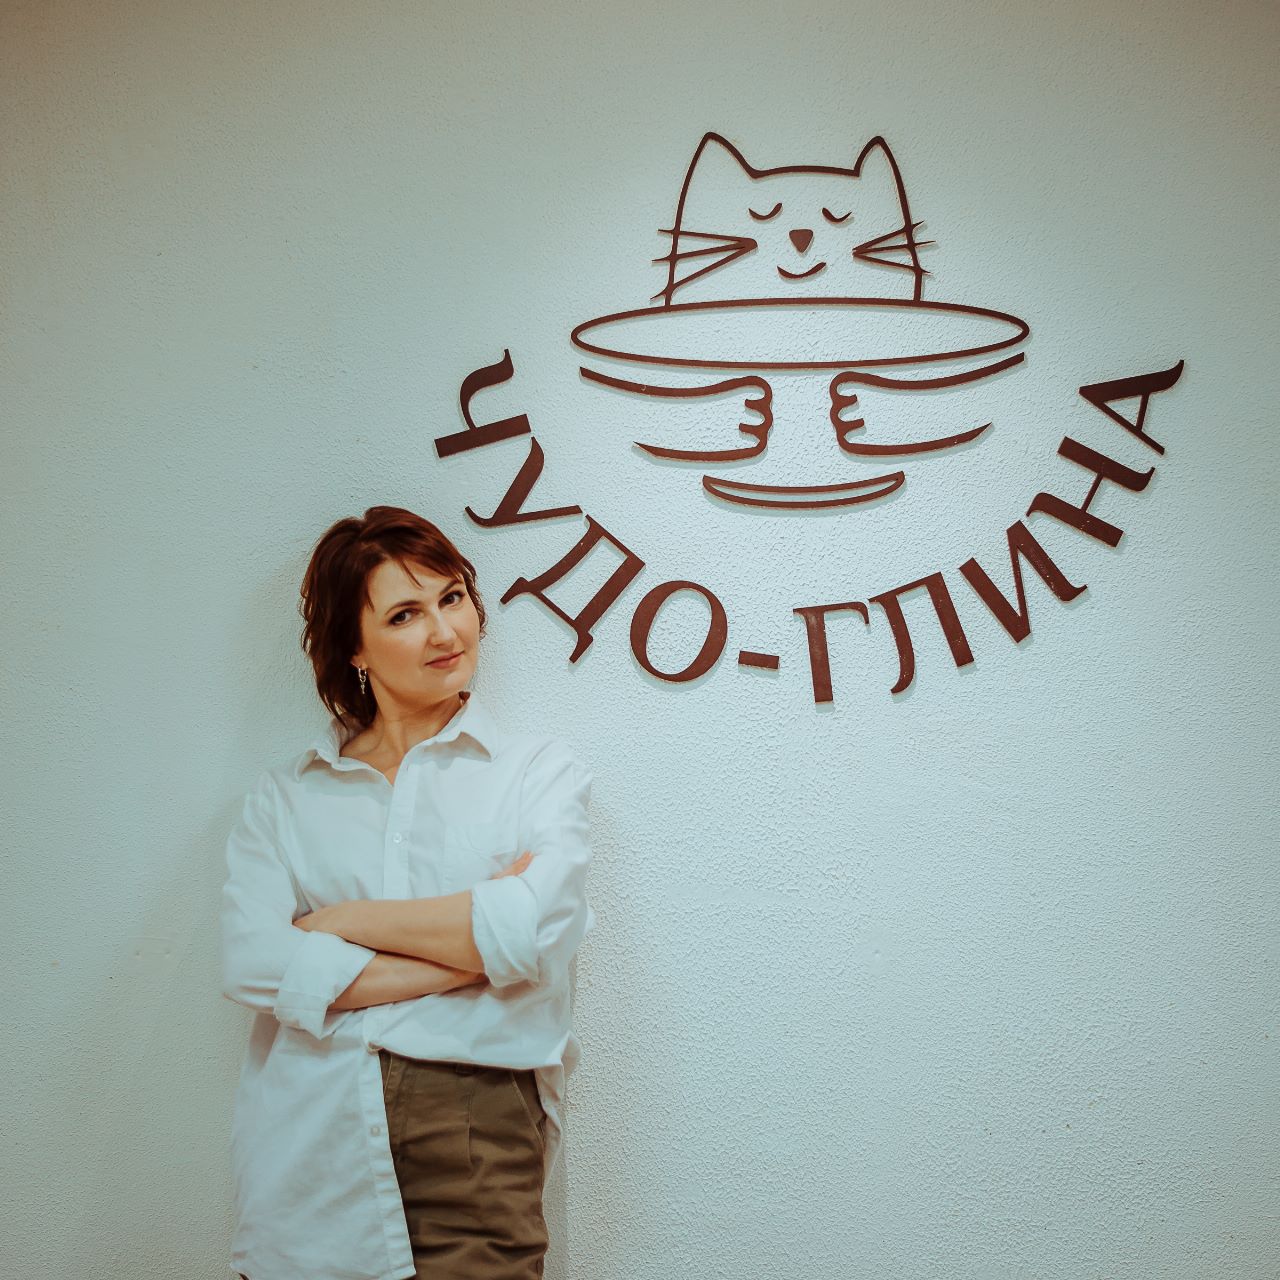 Как господдержка помогла башкирской предпринимательнице открыть гончарную мастерскую